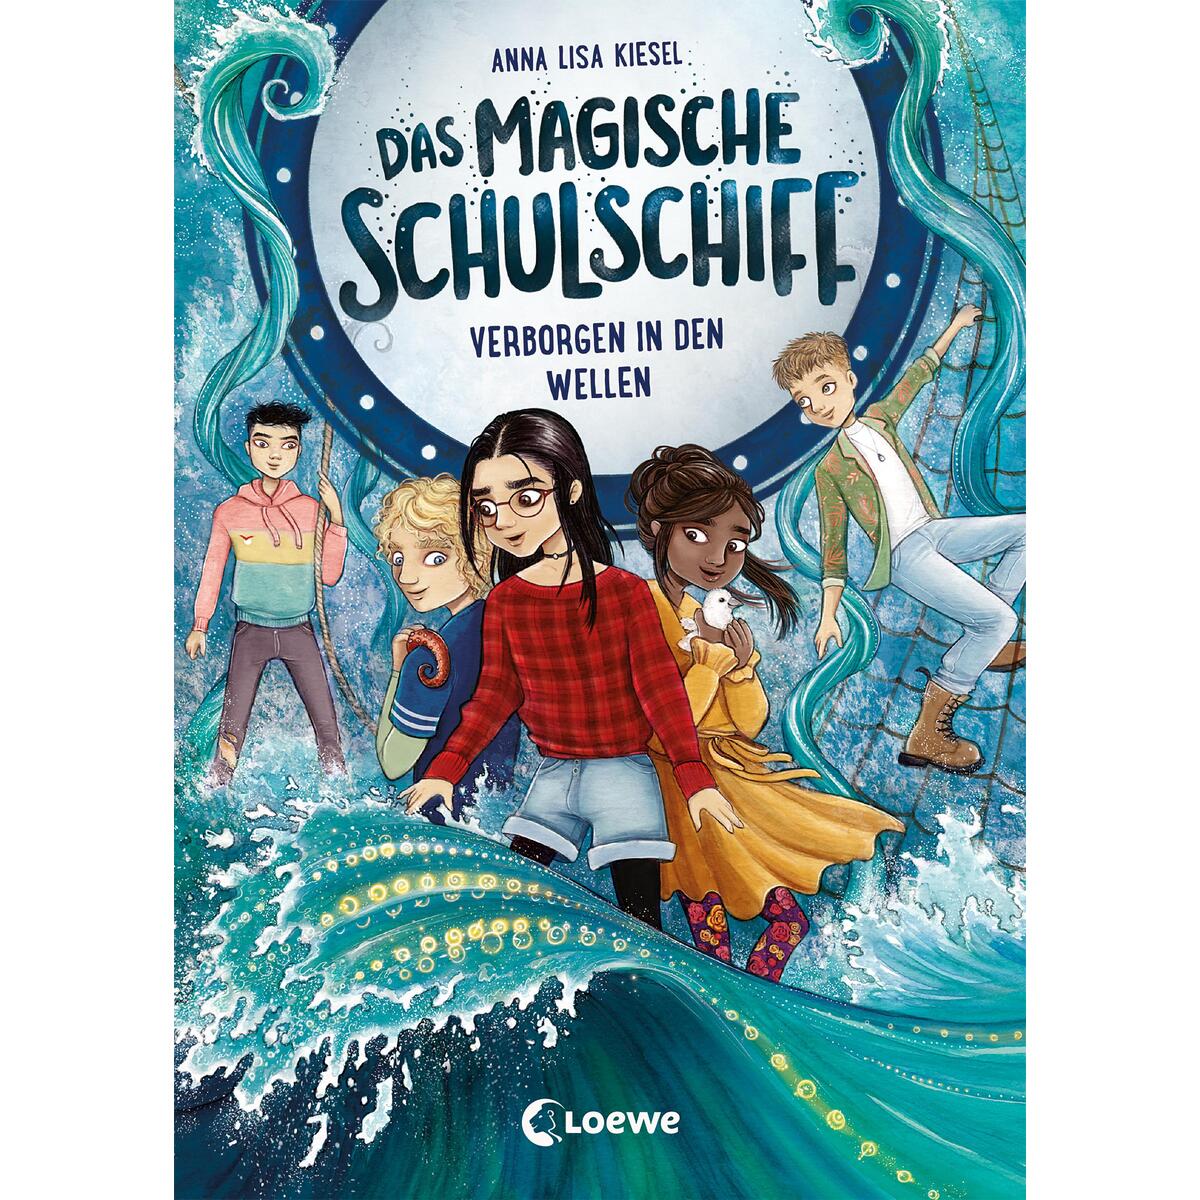 Das magische Schulschiff (Band 2) - Verborgen in den Wellen von Loewe Verlag GmbH